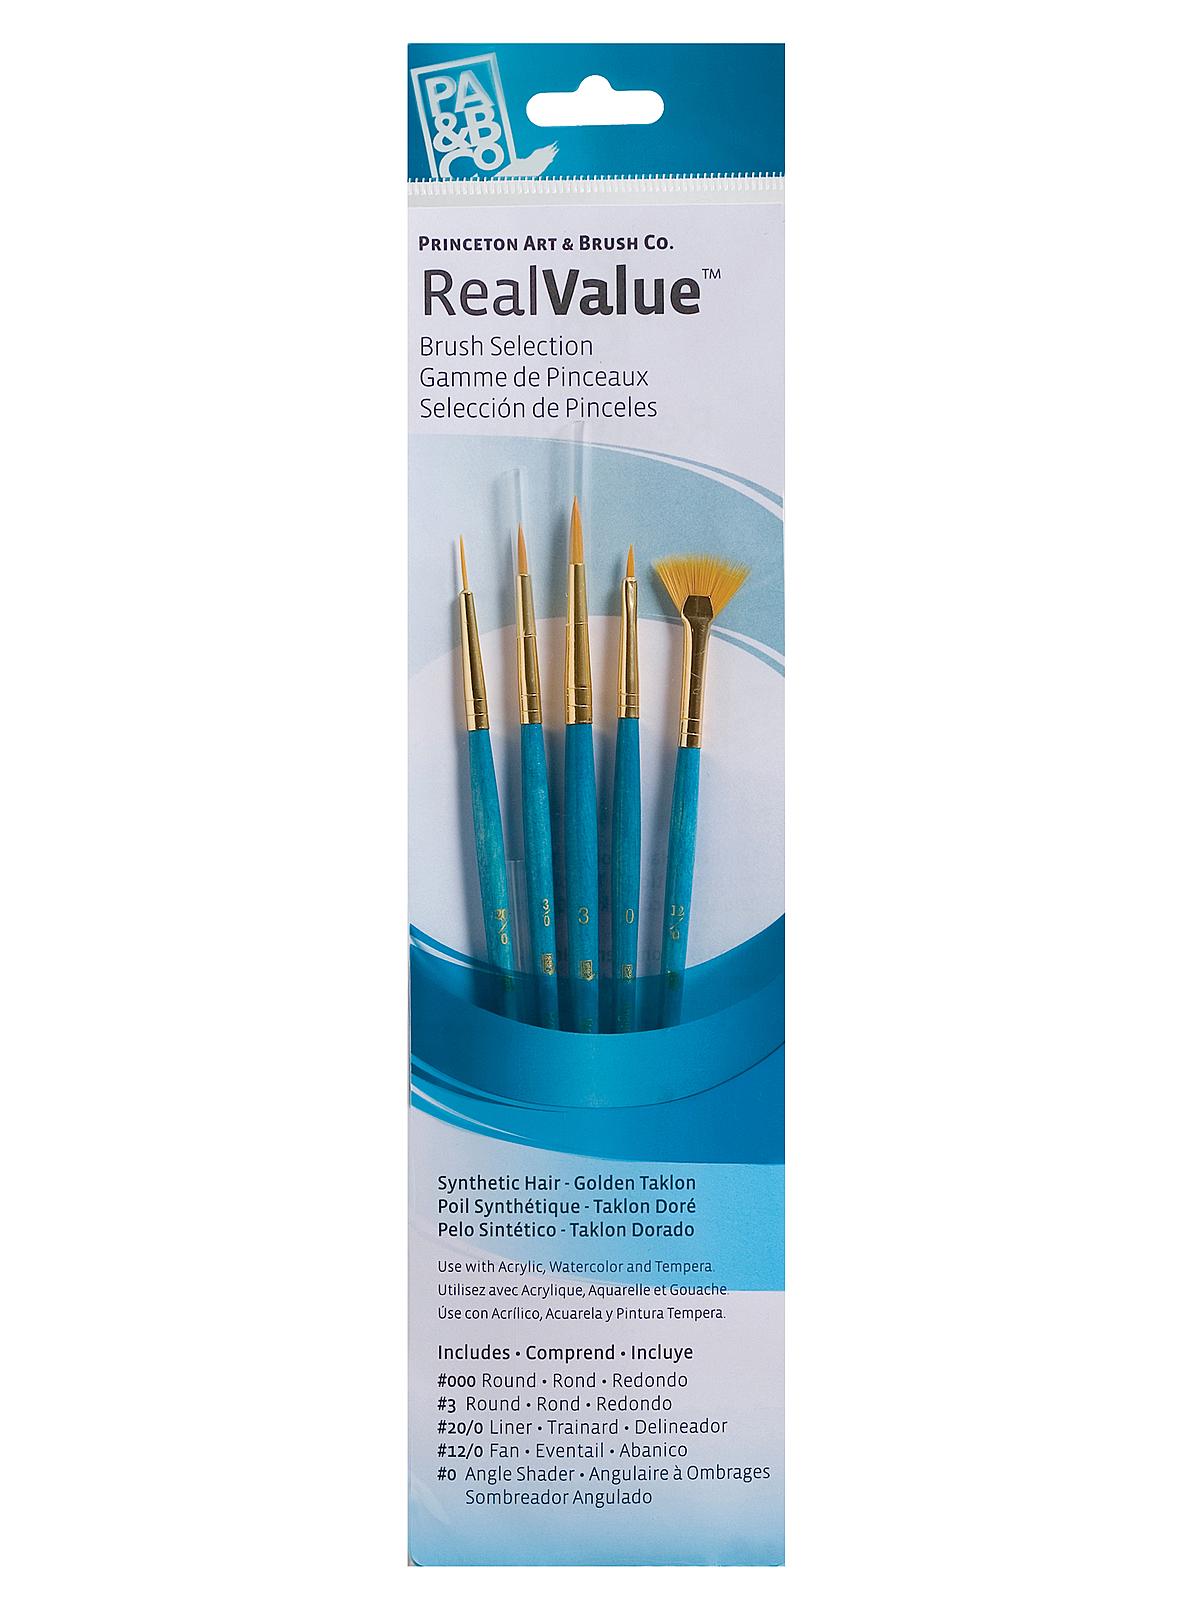 Real Value Series 9000 Light Blue Short Handled Brush Sets 9170 Set Of 5